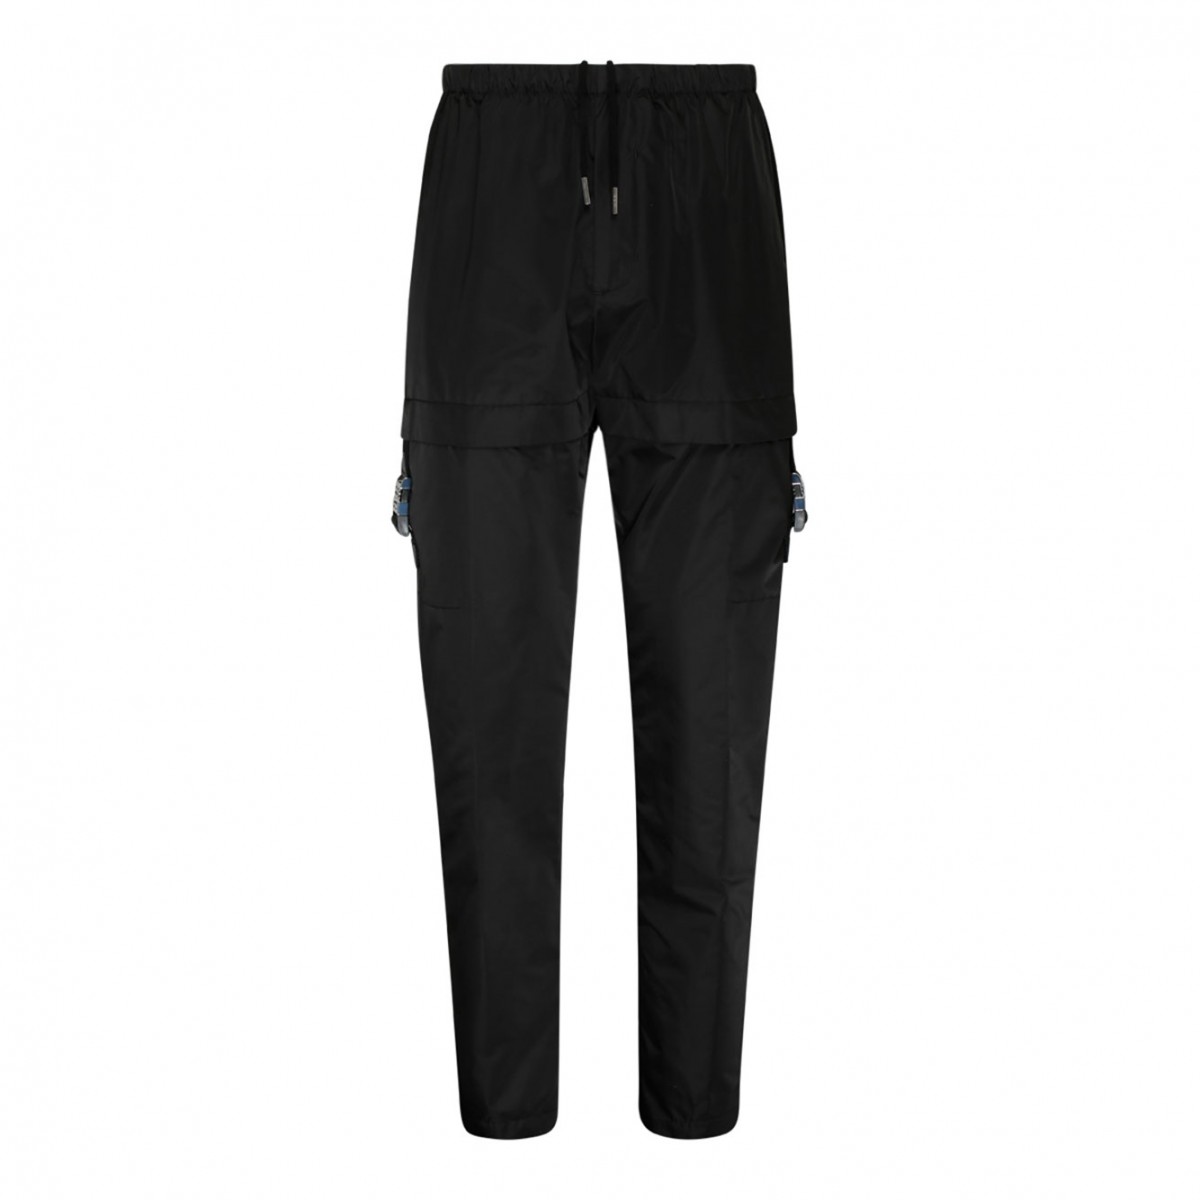 Givenchy Black Nylon Cargo Pants.